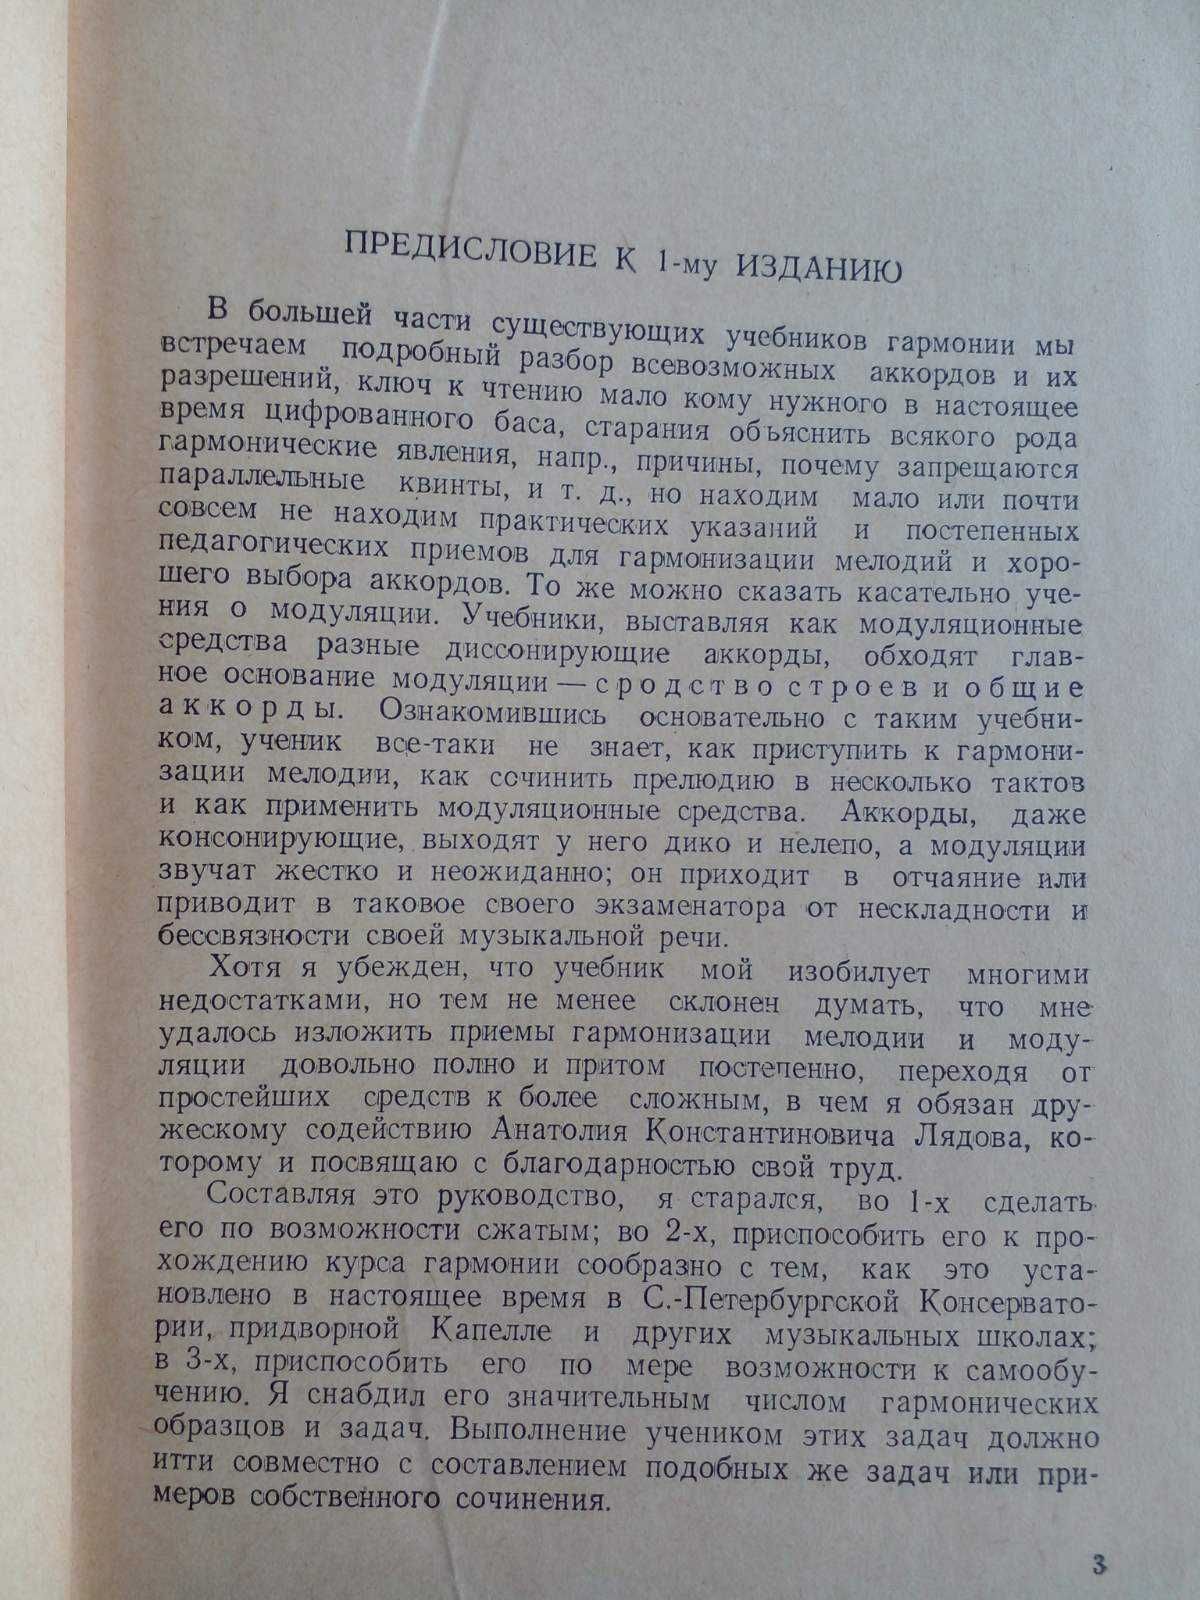 Римский-Корсаков Н.А. Практический учебник гармонии.